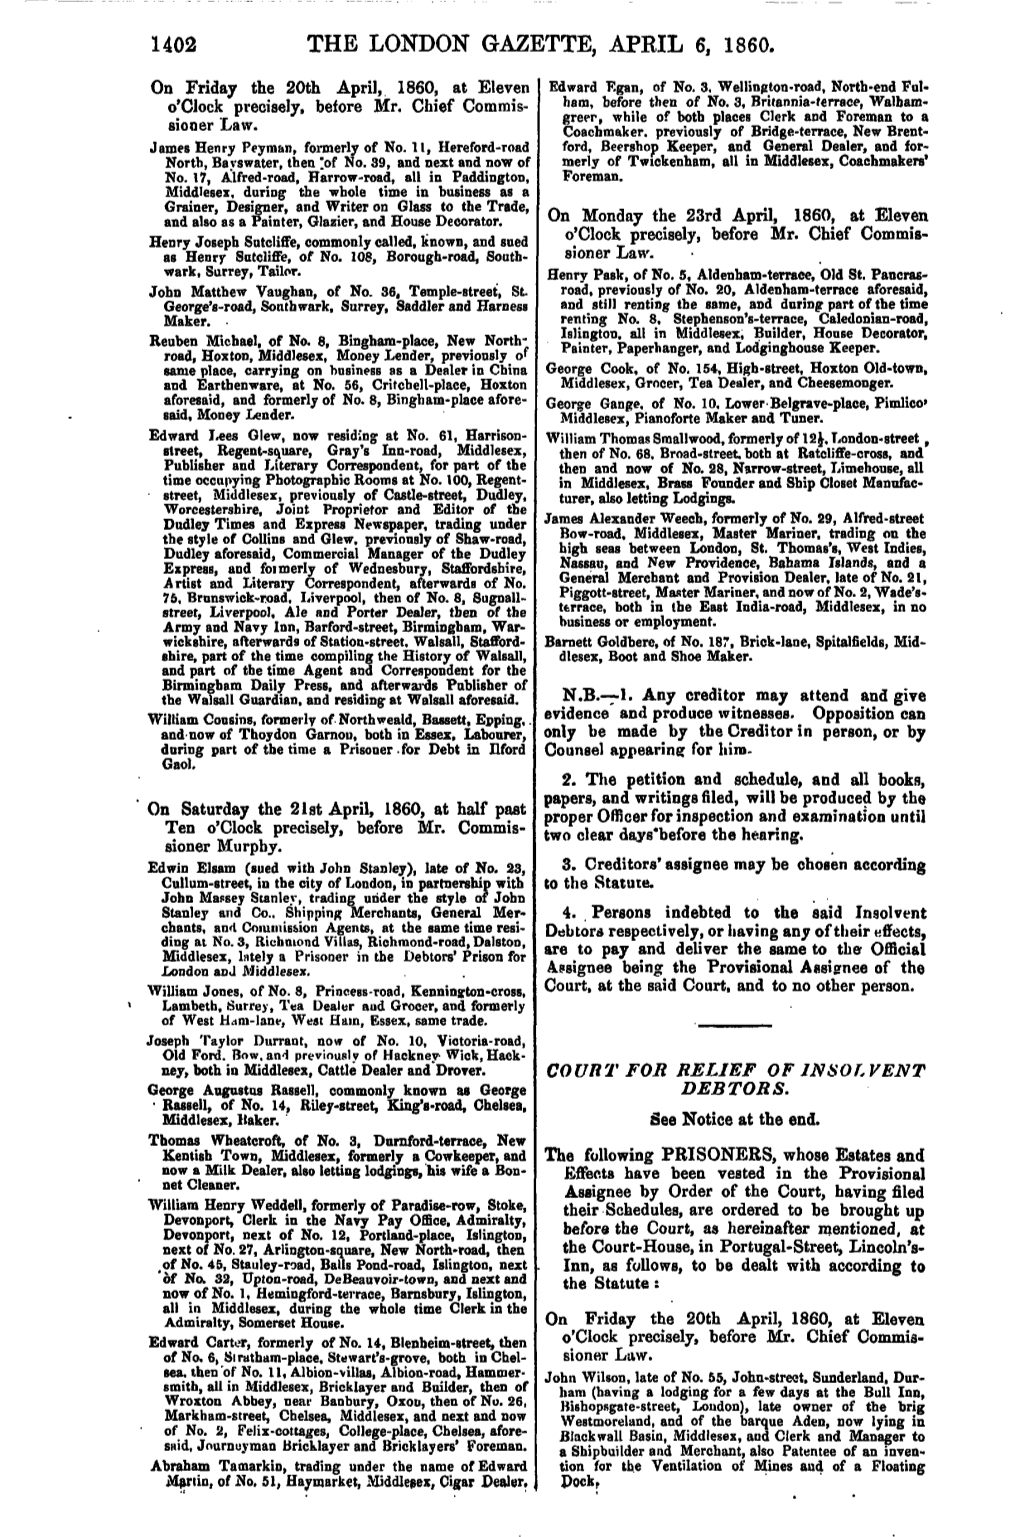 The London Gazette, April 6, 1860